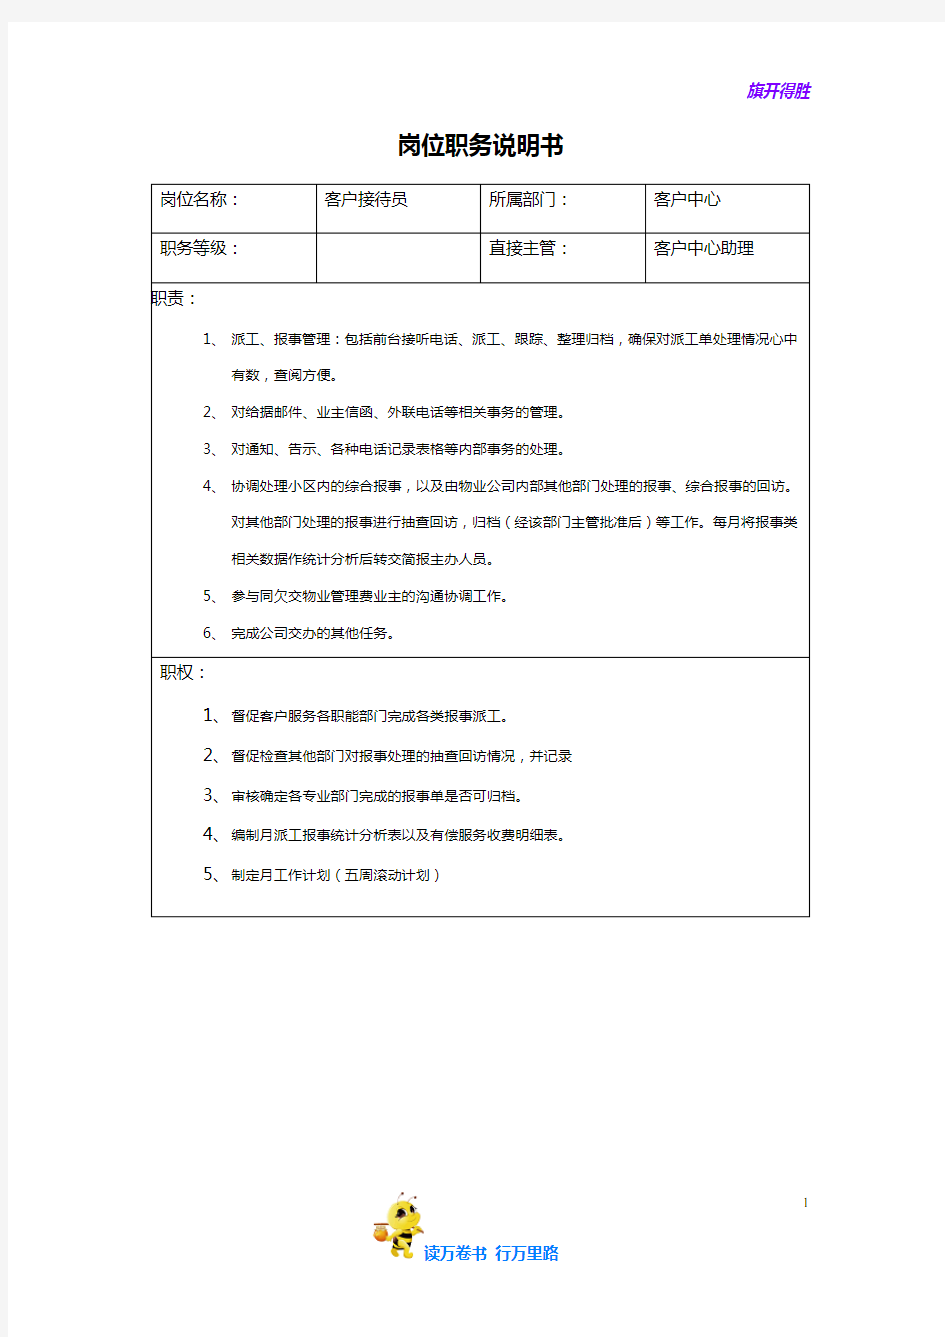 【物业管理 重庆龙湖】客户中心人员岗位职务说明书